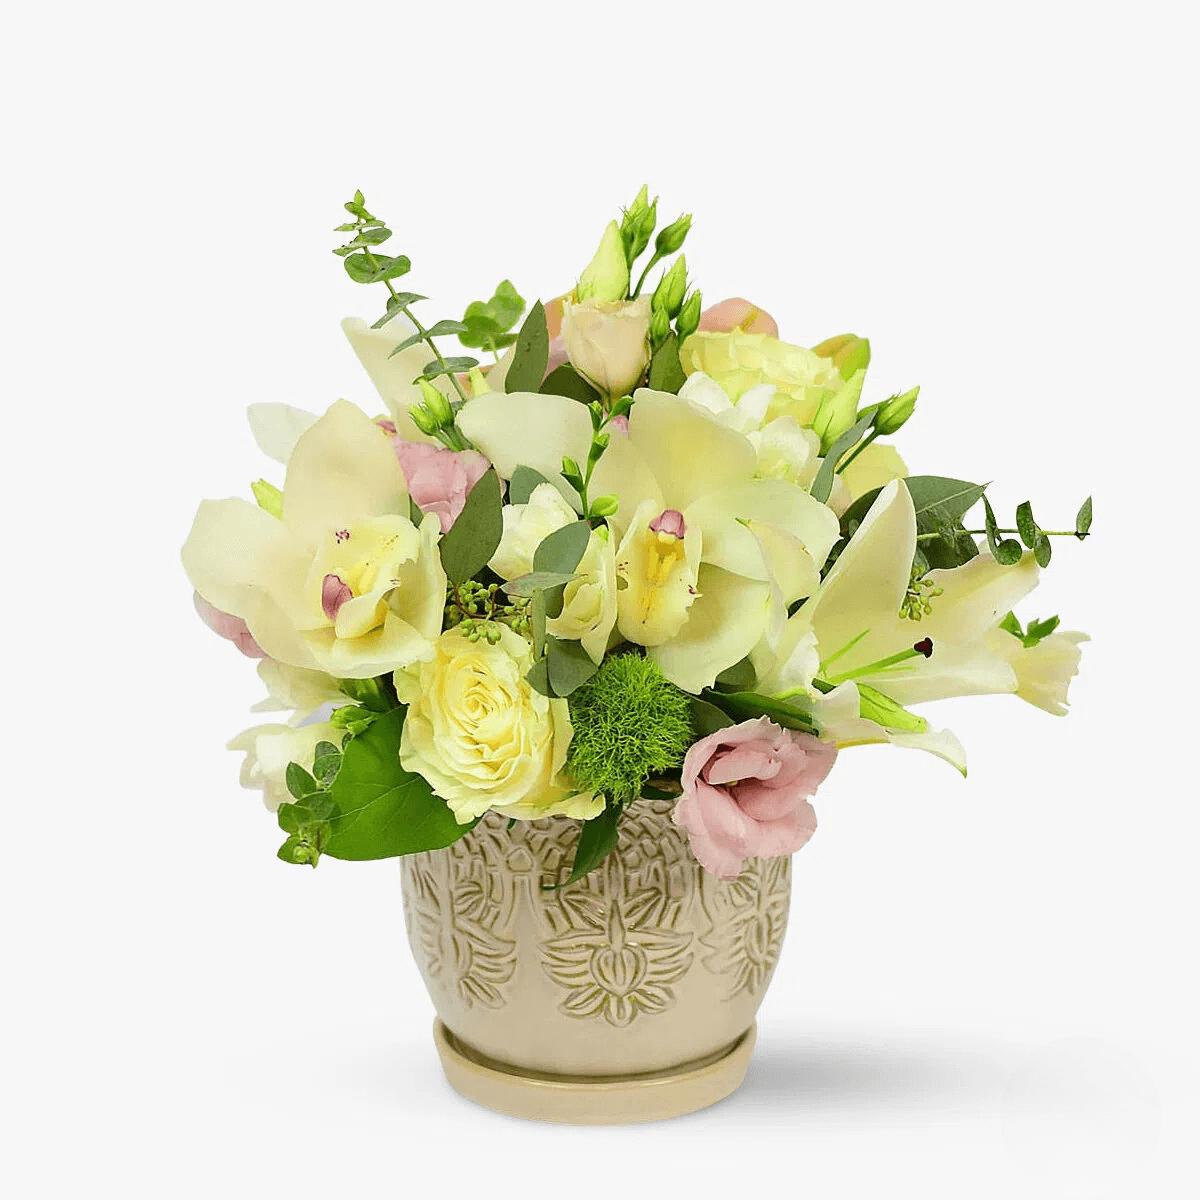 Aranjament floral – Flori pentru Iasmina – Standard Aranjament